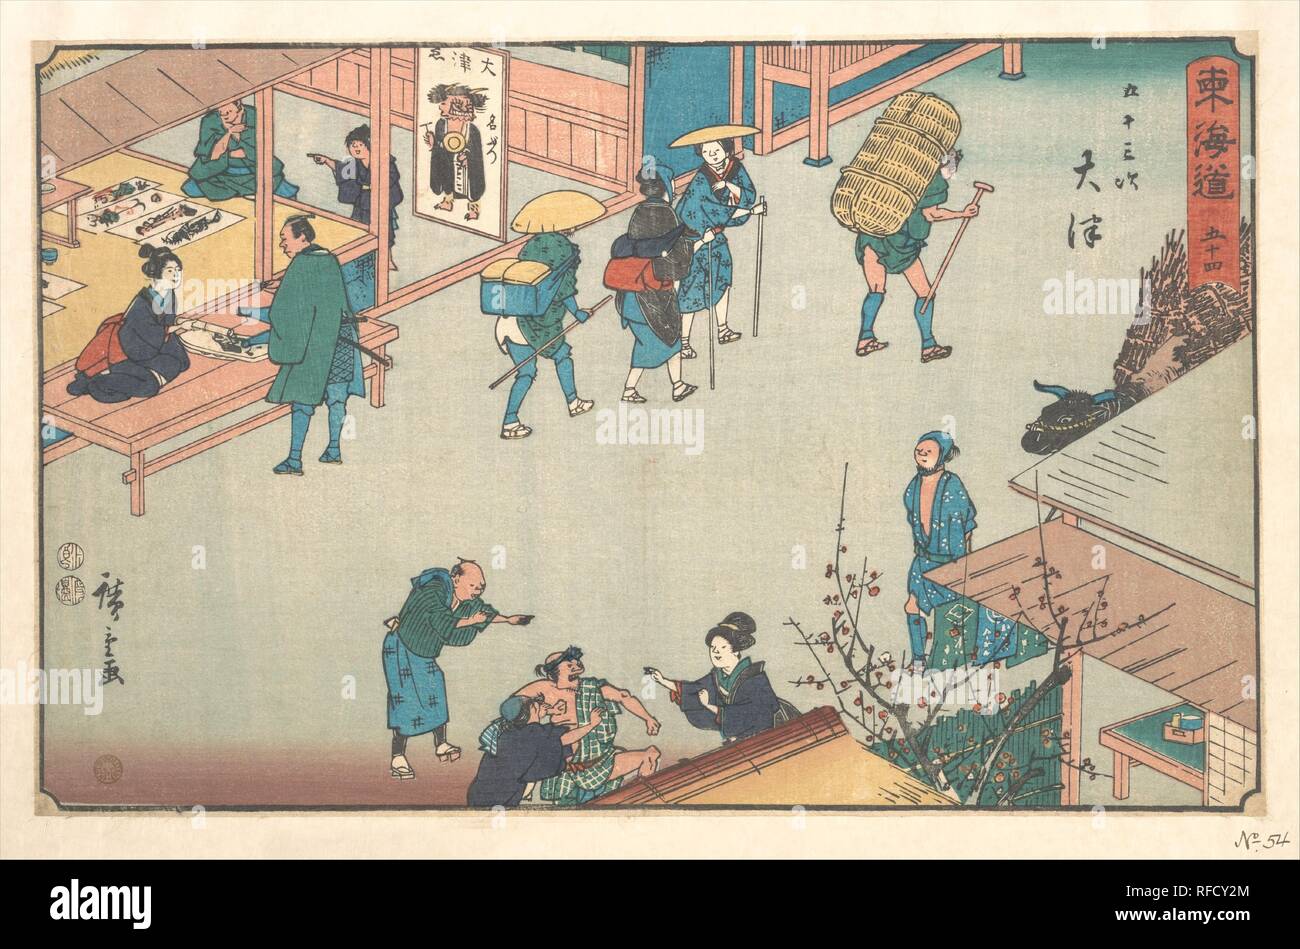 Otsu. Artist: Utagawa Hiroshige (Japanisch, Tokyo (EDO) 1797-1858 Tokyo (EDO)). Kultur: Japan. Abmessungen: Insgesamt: 8 3/4 x 13 3/4 in. (22,2 x 34,9 cm). Datum: Ca. 1840. Die Autobahn, die Tokaido ungefähr 290 Meilen von Nihonbashi im Zentrum von Edo zu den Großen Sanjo Brücke in Kyoto, eine Reise von zehn Tagen oder zwei Wochen gestreckt. Zwischen Edo und Kyoto, 53 Stationen bedient die Bedürfnisse der Reisenden. Alle entlang der Tokaido, die Größe der spektakulären Landschaften und Küsten wurde mit einer Vielzahl von menschlichen Tätigkeiten unterbrochen. Dieser Ausdruck zeigt deutlich, Reisende auf einer belebten Straße der O Stockfoto